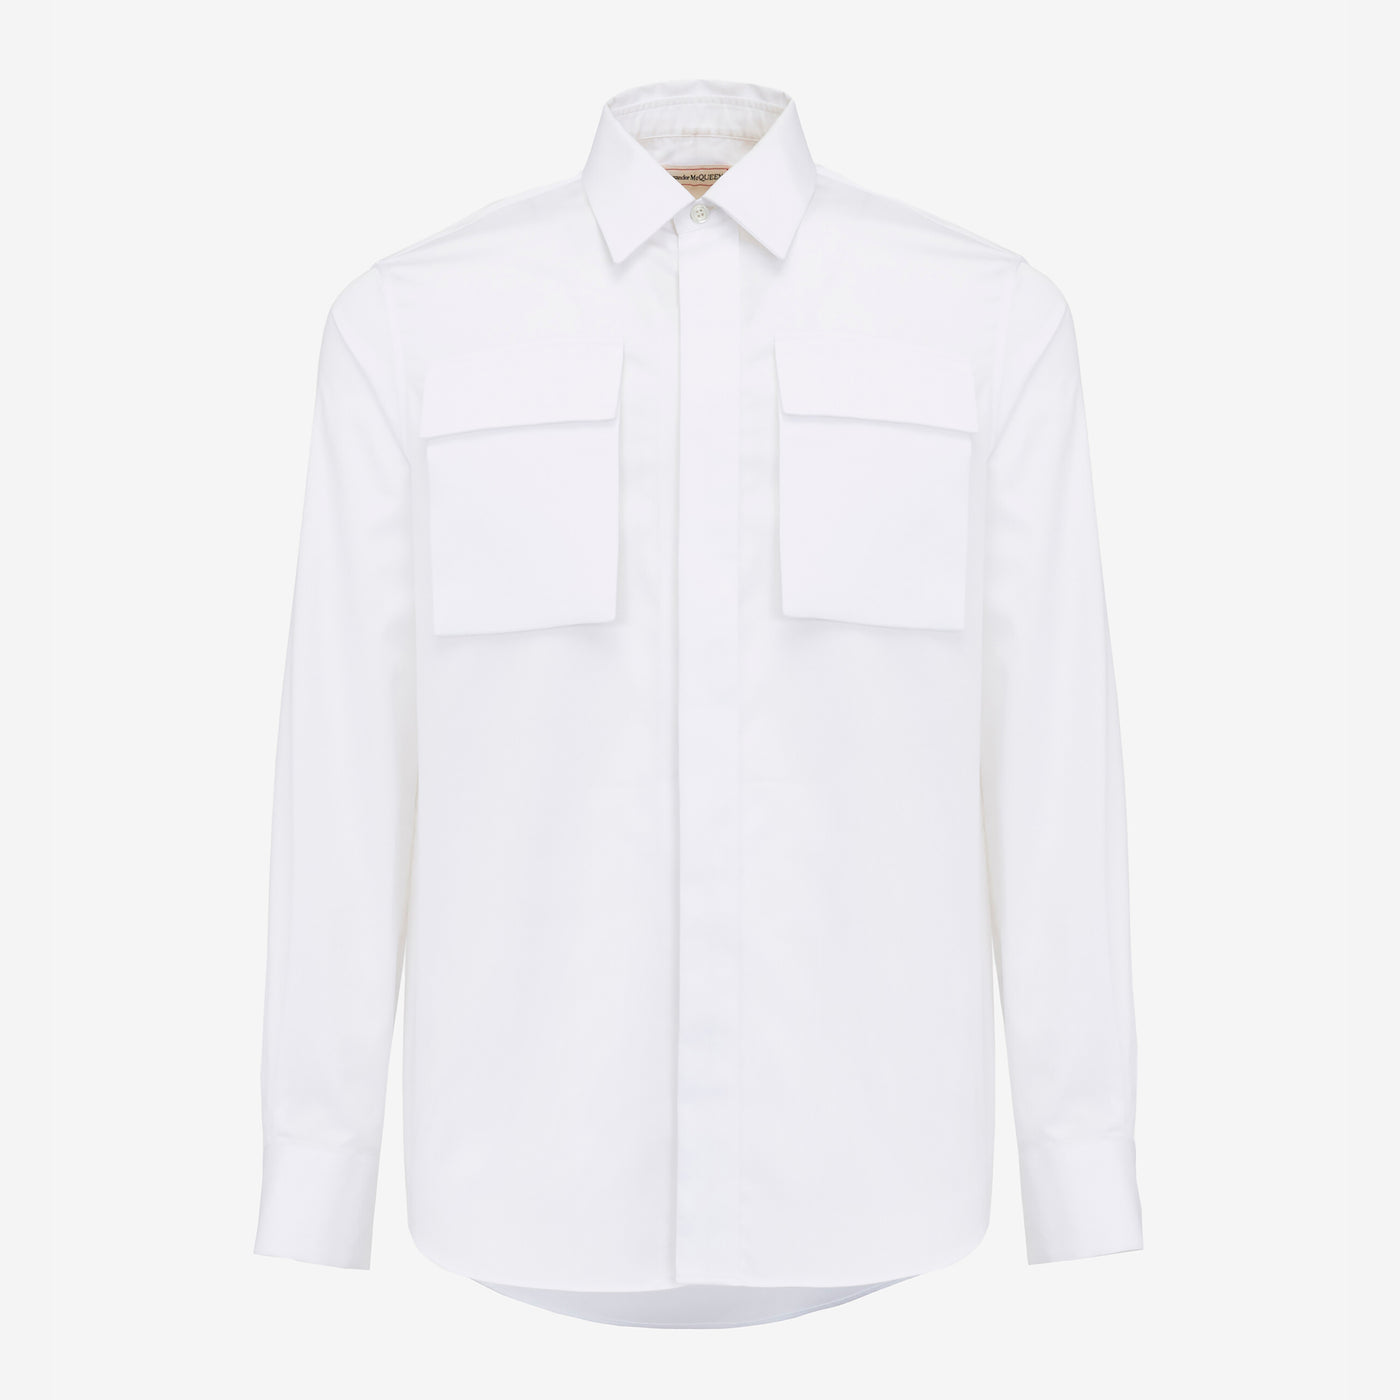 Alexander McQueen Military Pocket Shirt